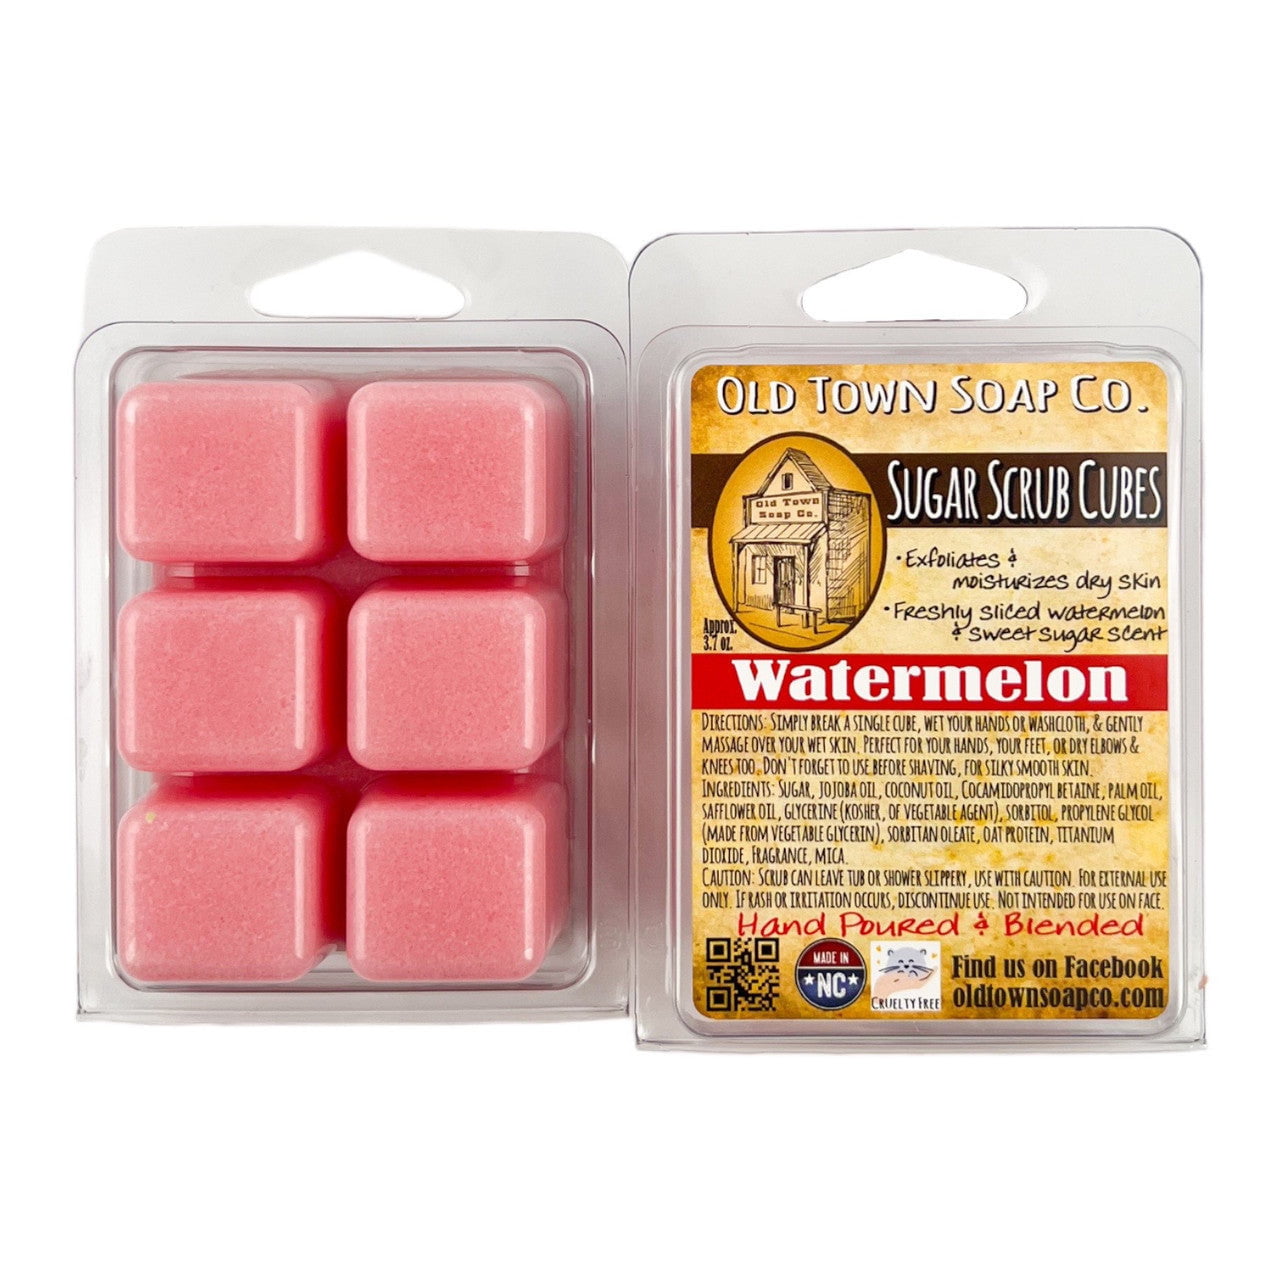 Watermelon - Sugar Scrub Cubes - Old Town Soap Co.